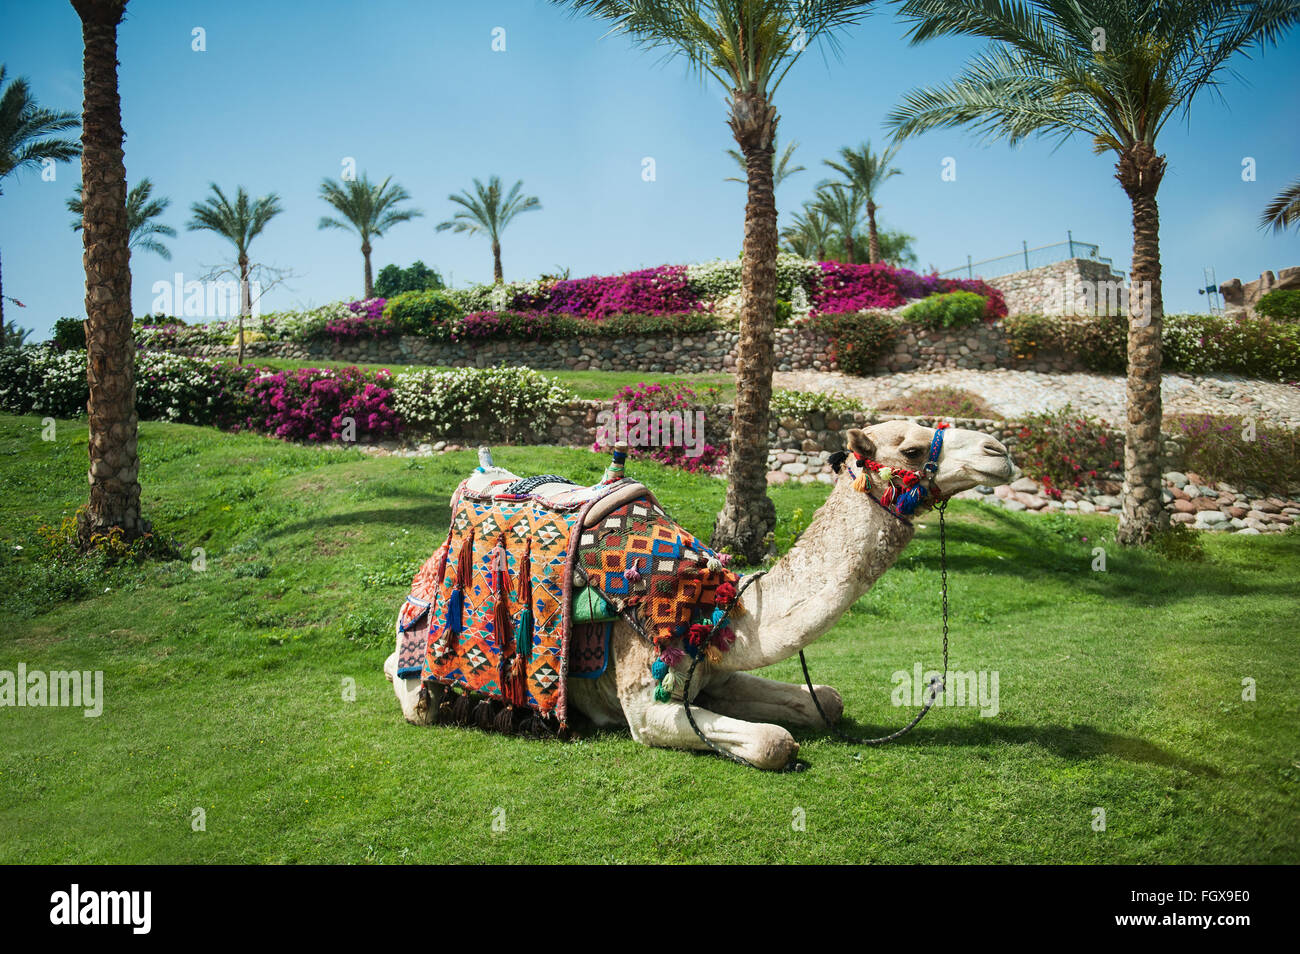 Chameau couché dans l'herbe près de palmiers Banque D'Images